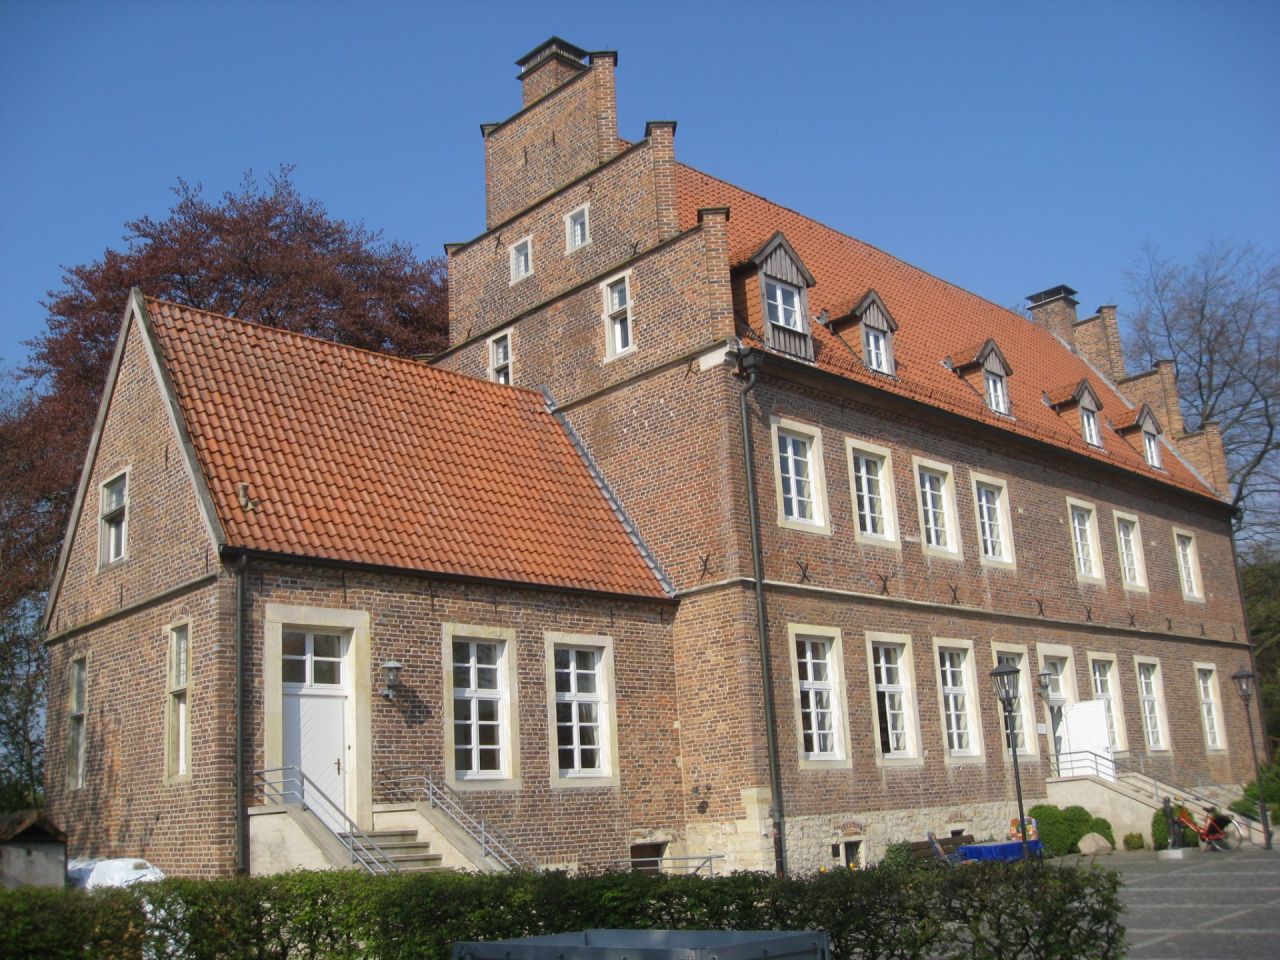 Horstmar Borghorster Hof